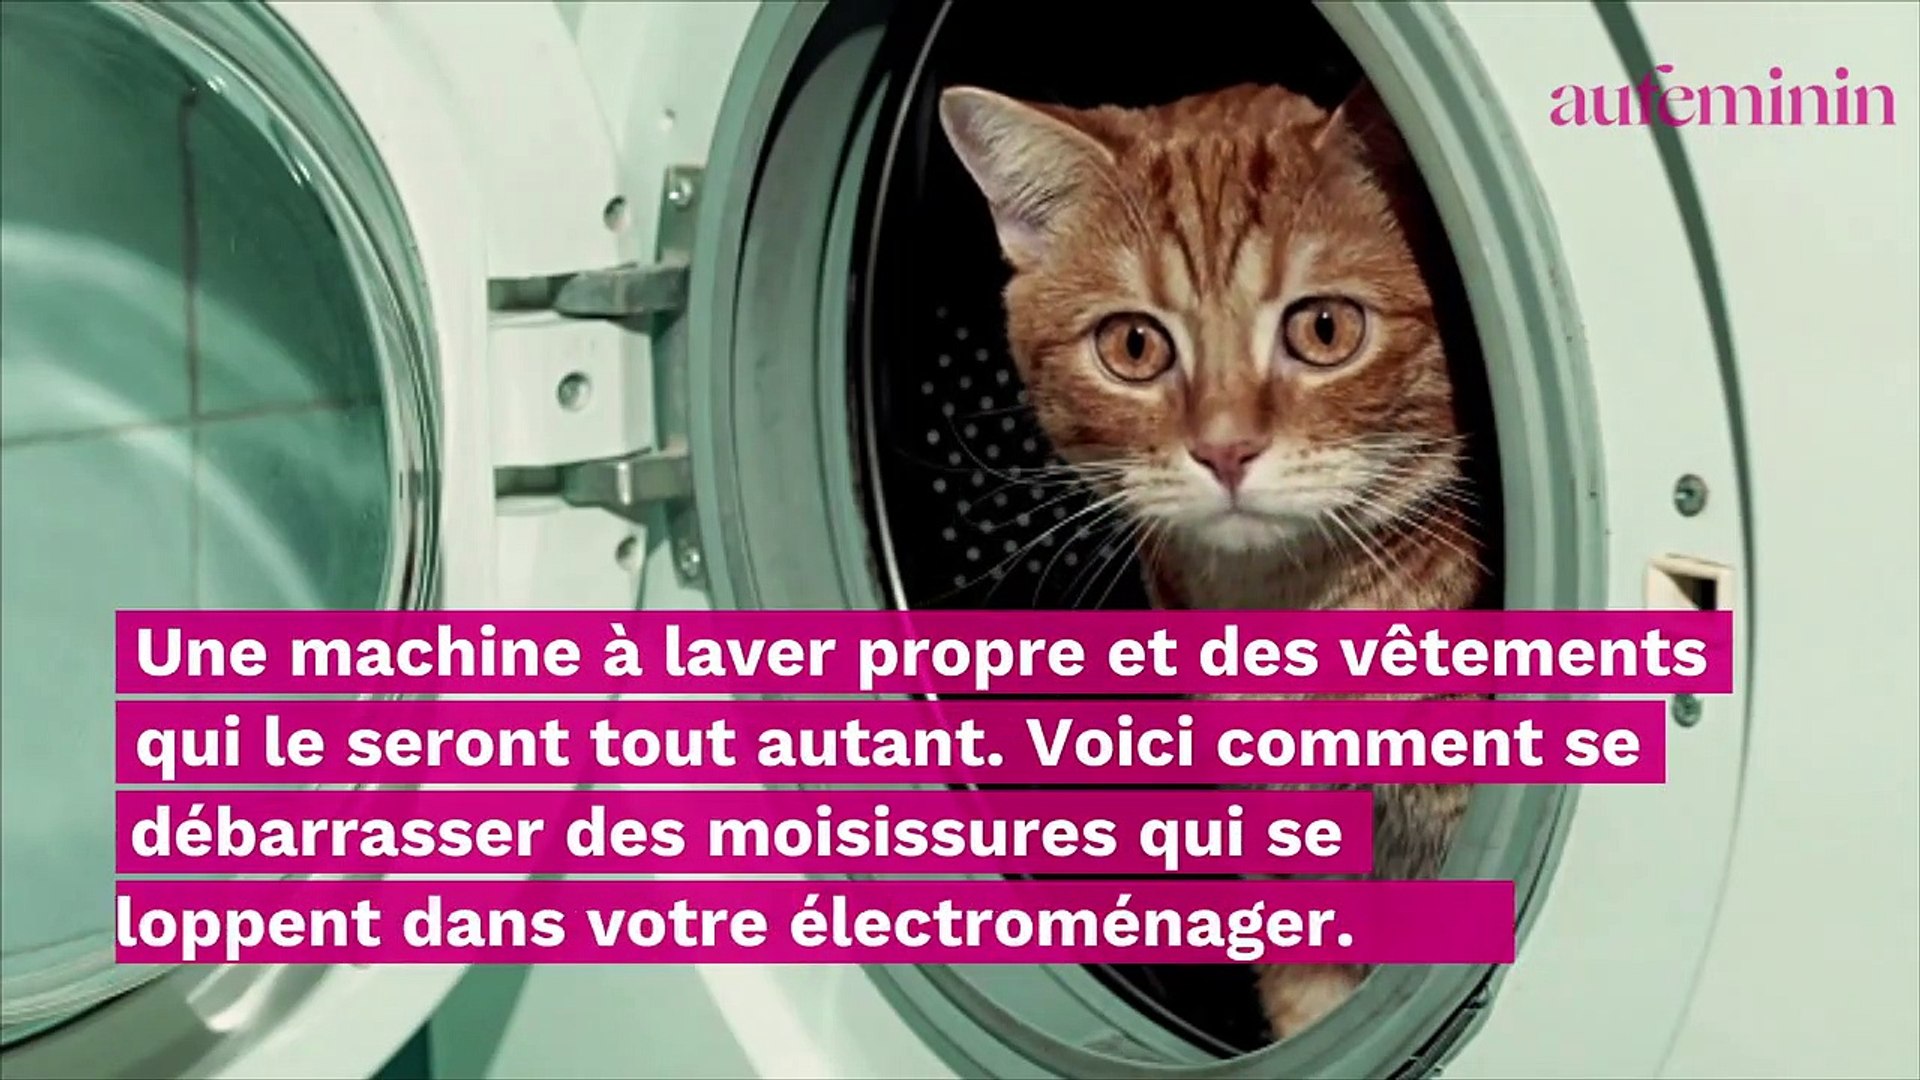 Moisissure dans la machine à laver ? Voici comment les éliminer - Vidéo  Dailymotion